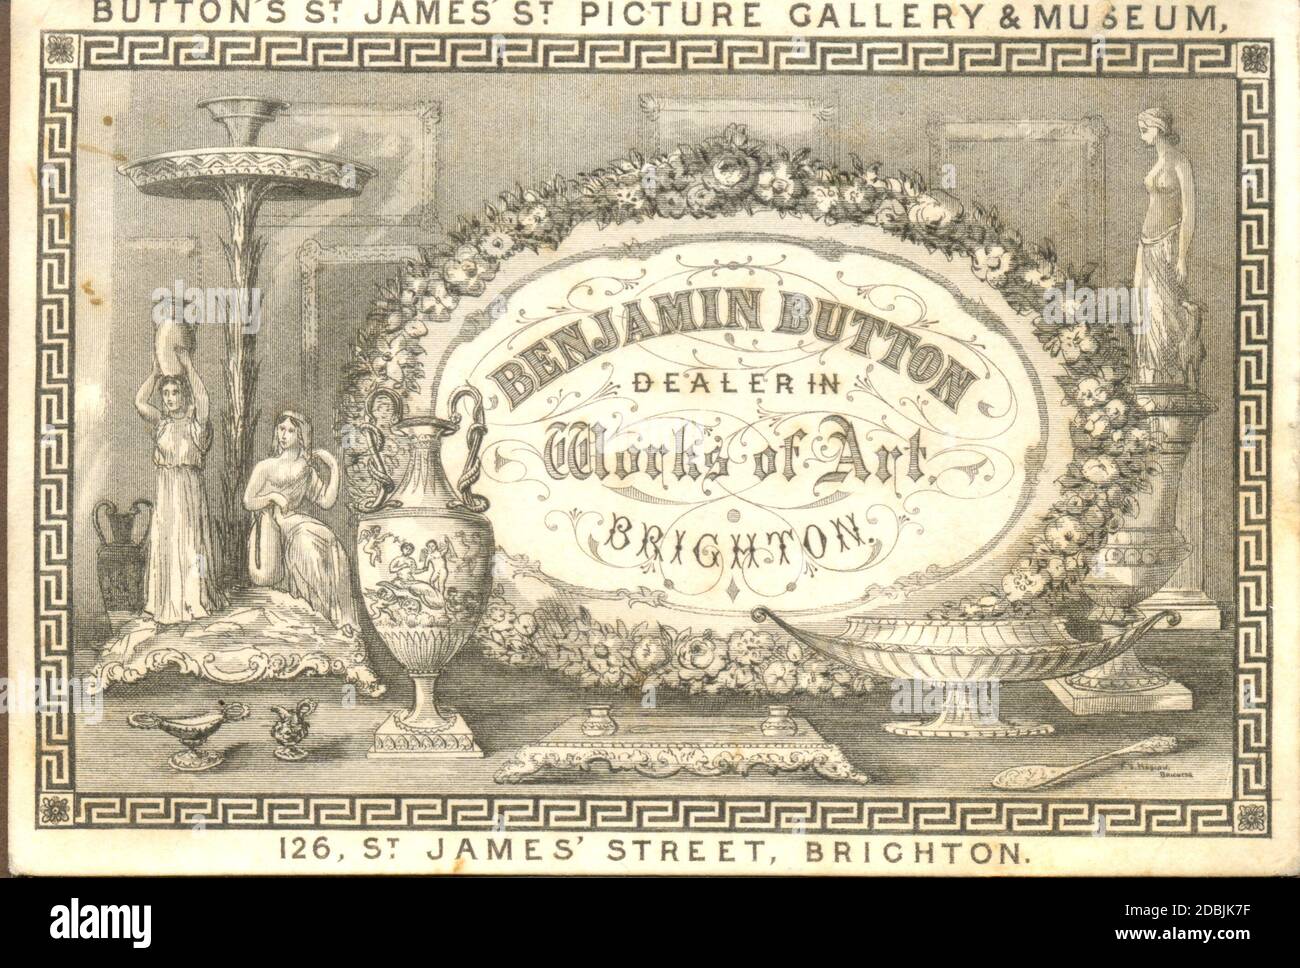 Elaborata incisione su copperplate della carta da commercio per Benjamin  Button, commerciante in opere d'arte, Brighton circa 1865 Foto stock - Alamy